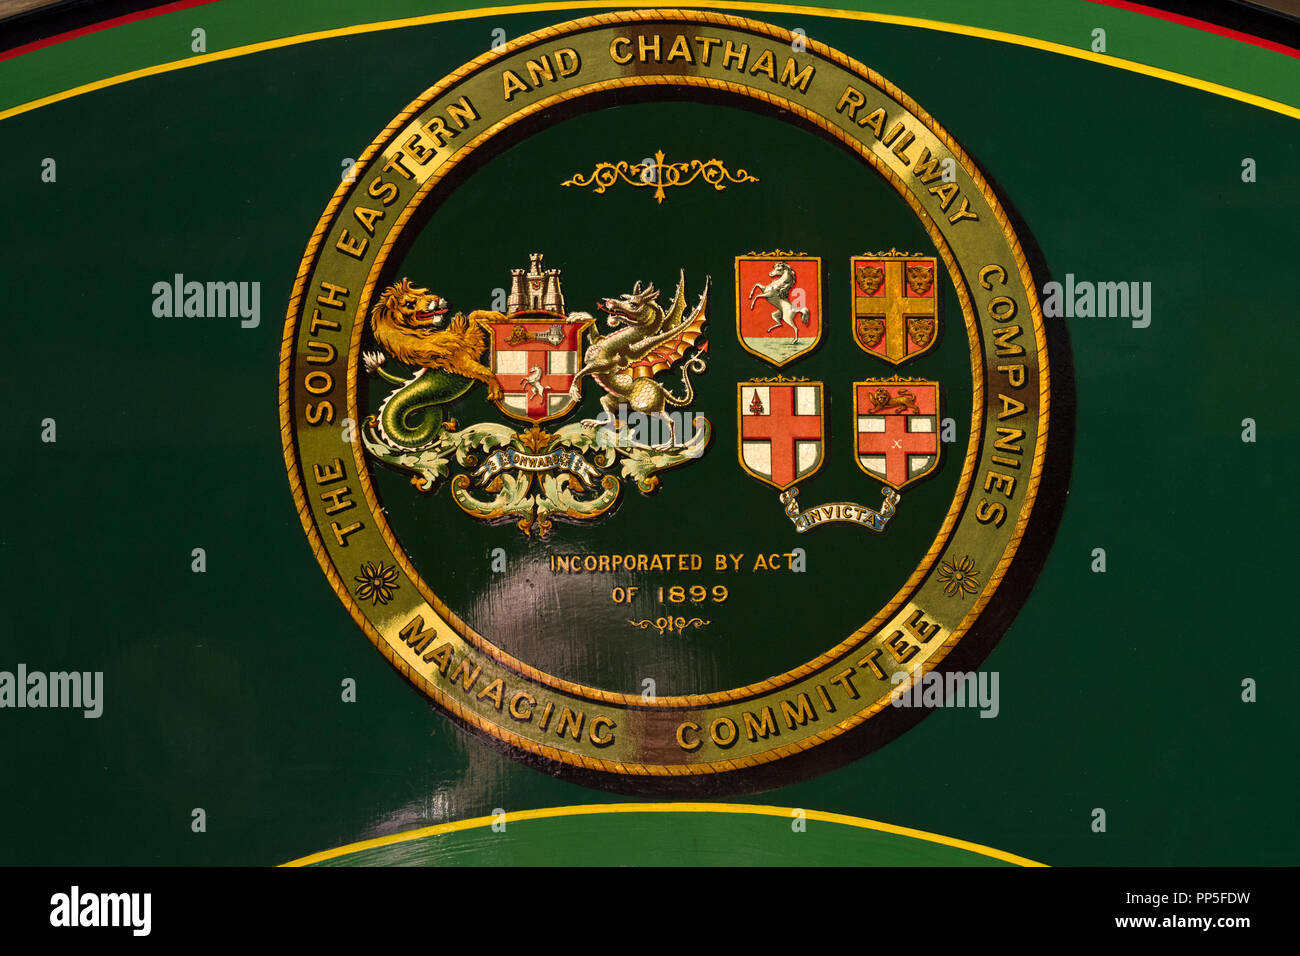 Le sud-est et Chatham Railway Company Coat of Arms Banque D'Images